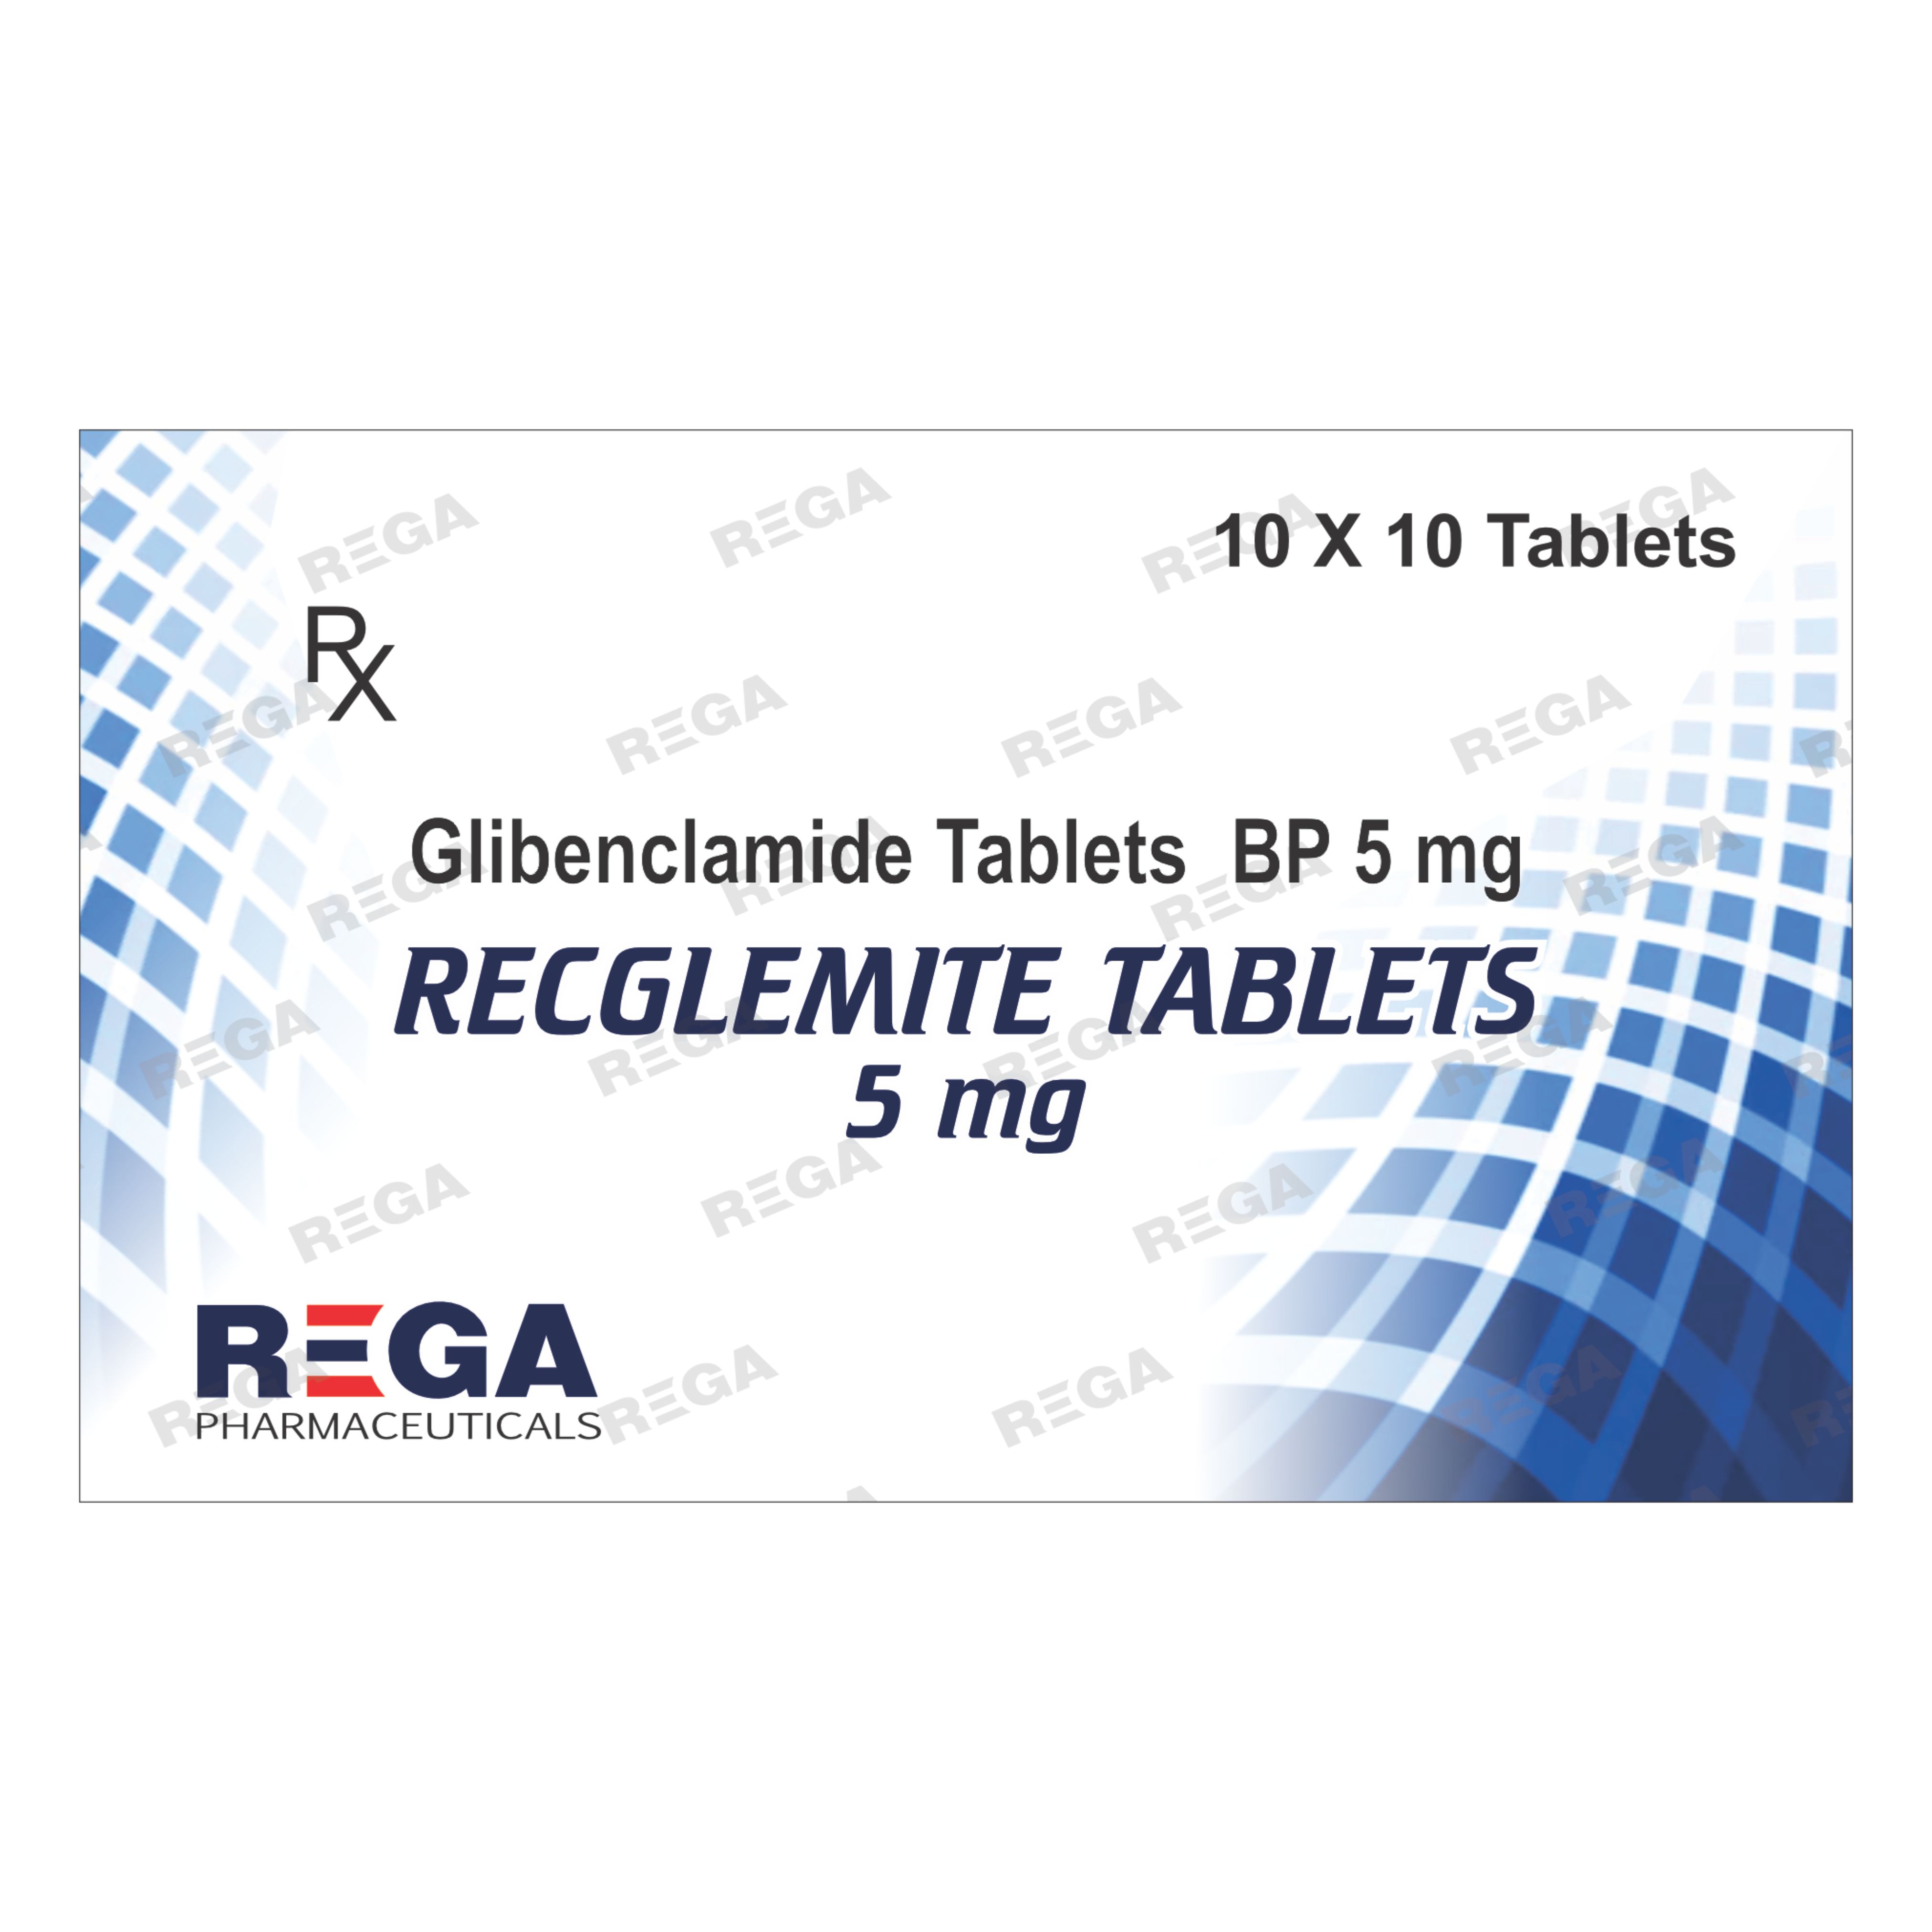 Glibenclamide Tablets BP 5 mg